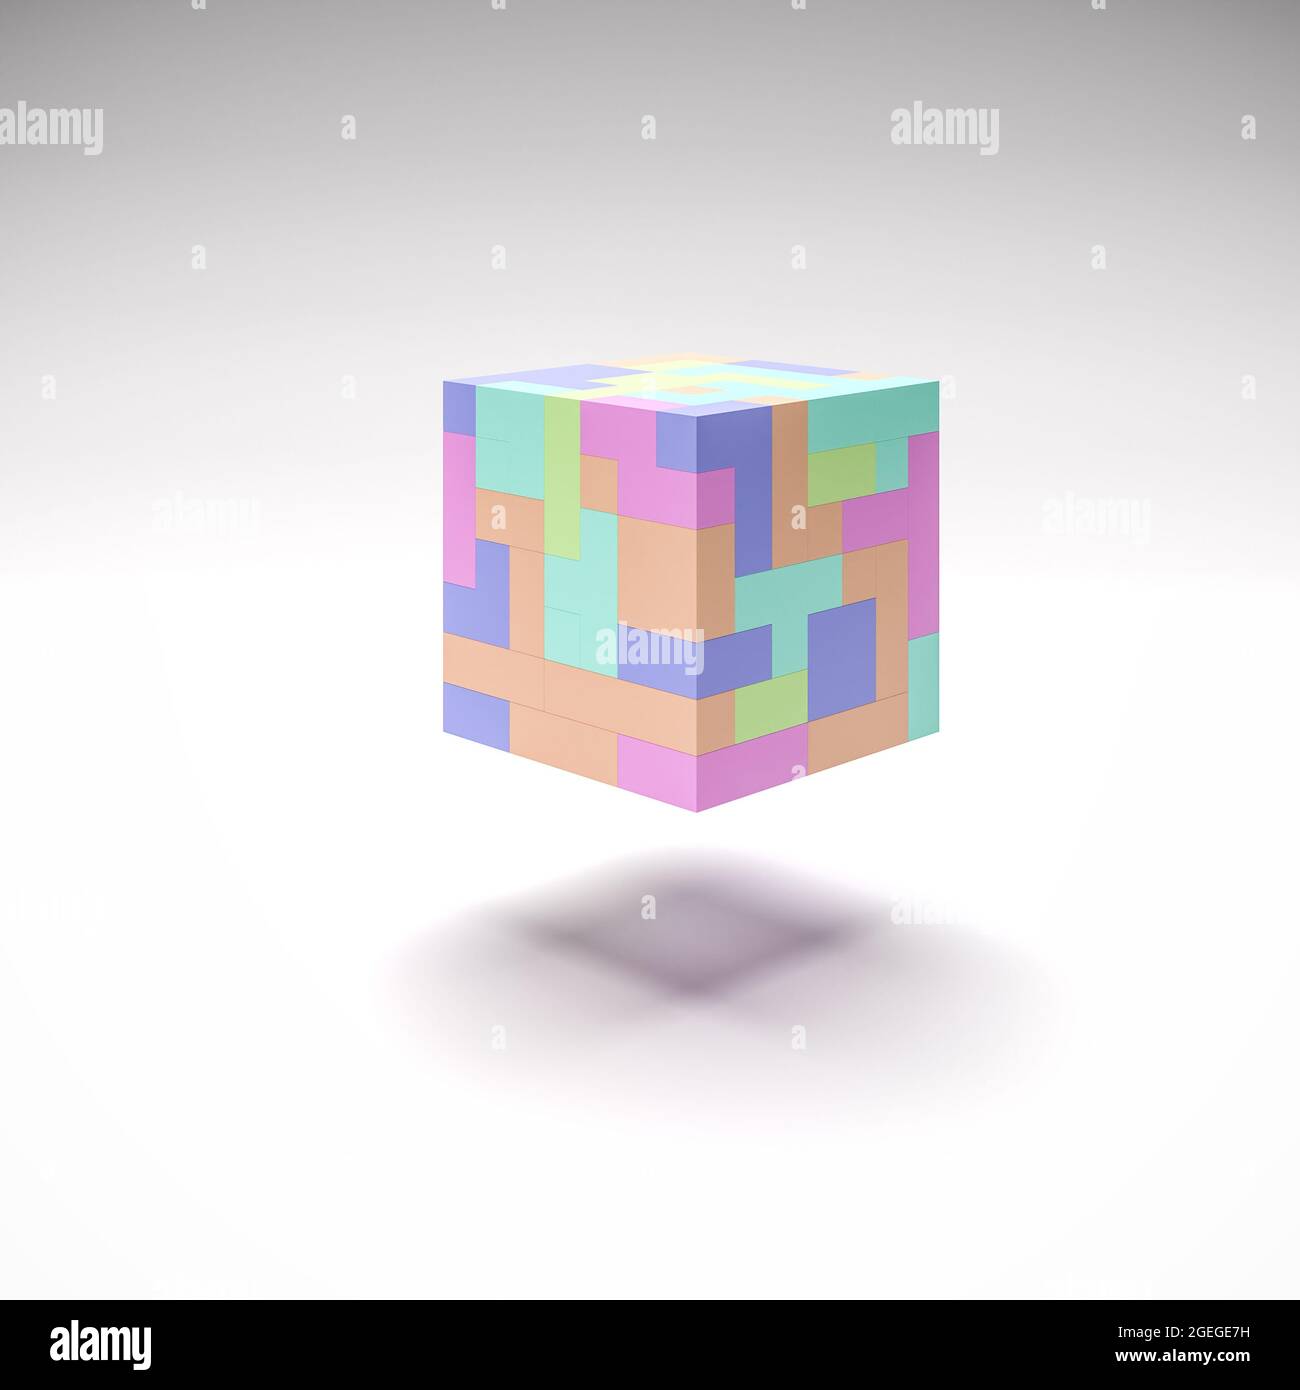 Ein Würfel aus schwebenden Tetris wie Blöcke in verschiedenen Pastellfarben und Formen. Abstrakter Hintergrund. Stockfoto